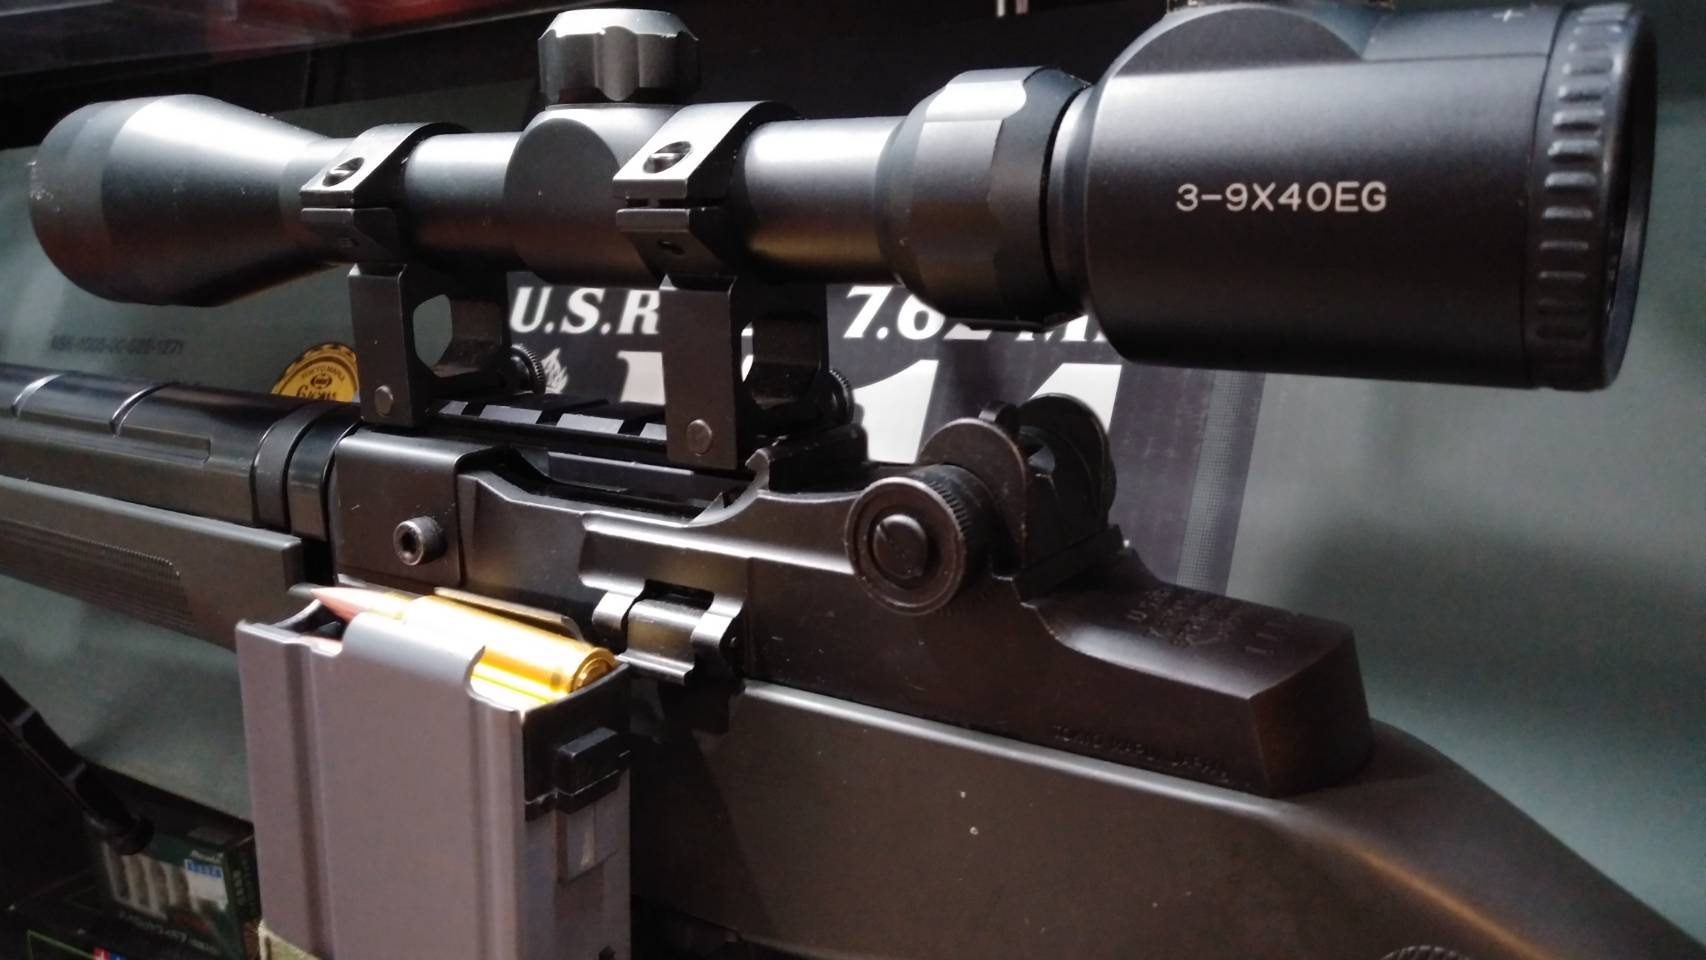 2/3☆〈東京マルイ製スタンダード電動ガン U.S.rifle M14〉買取入荷